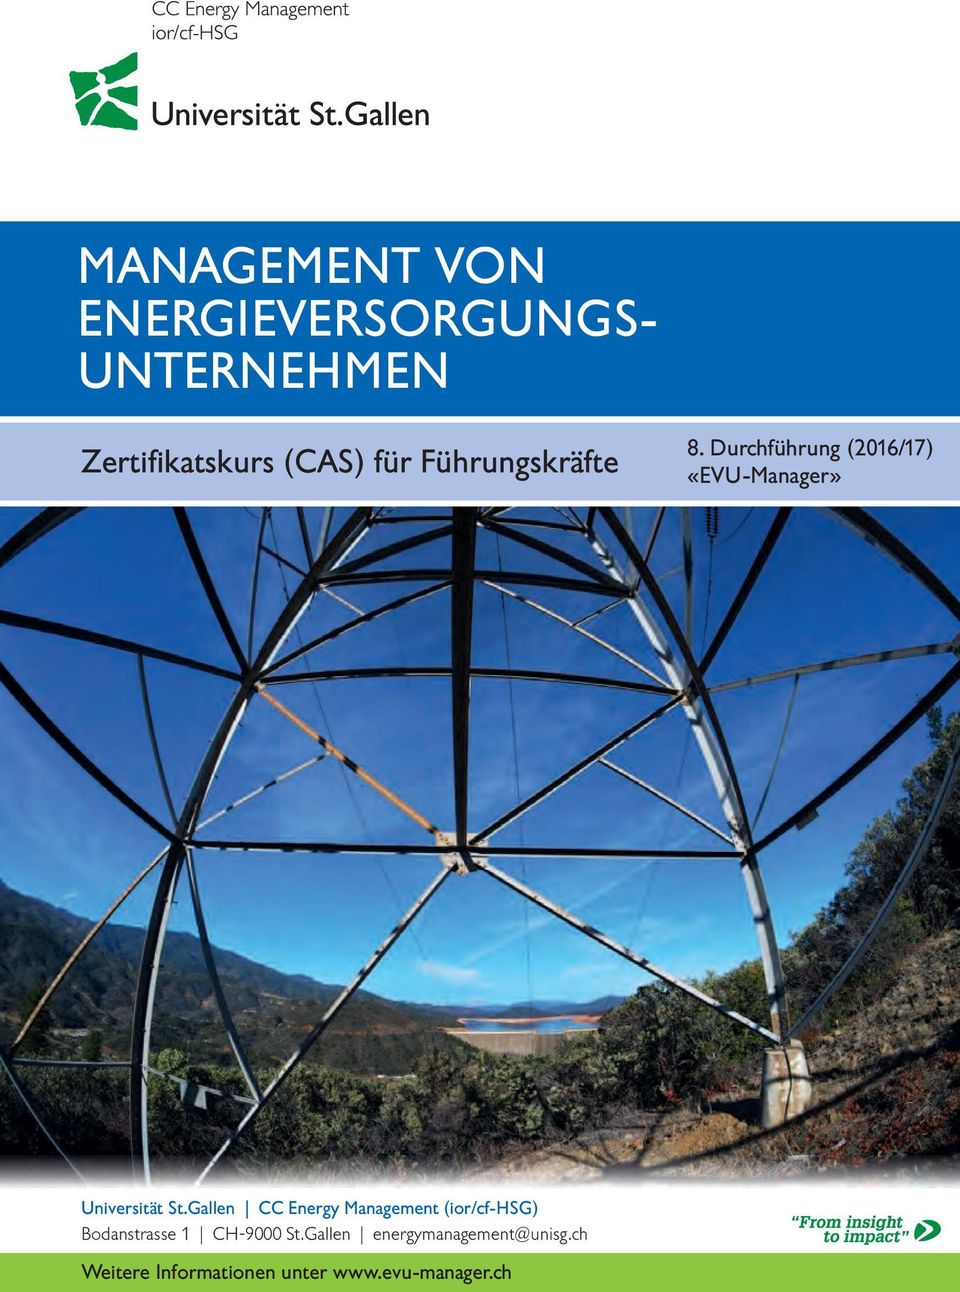 Gallen CC Energy Management (ior/cf-hsg) Bodanstrasse 1 CH-9000 St.